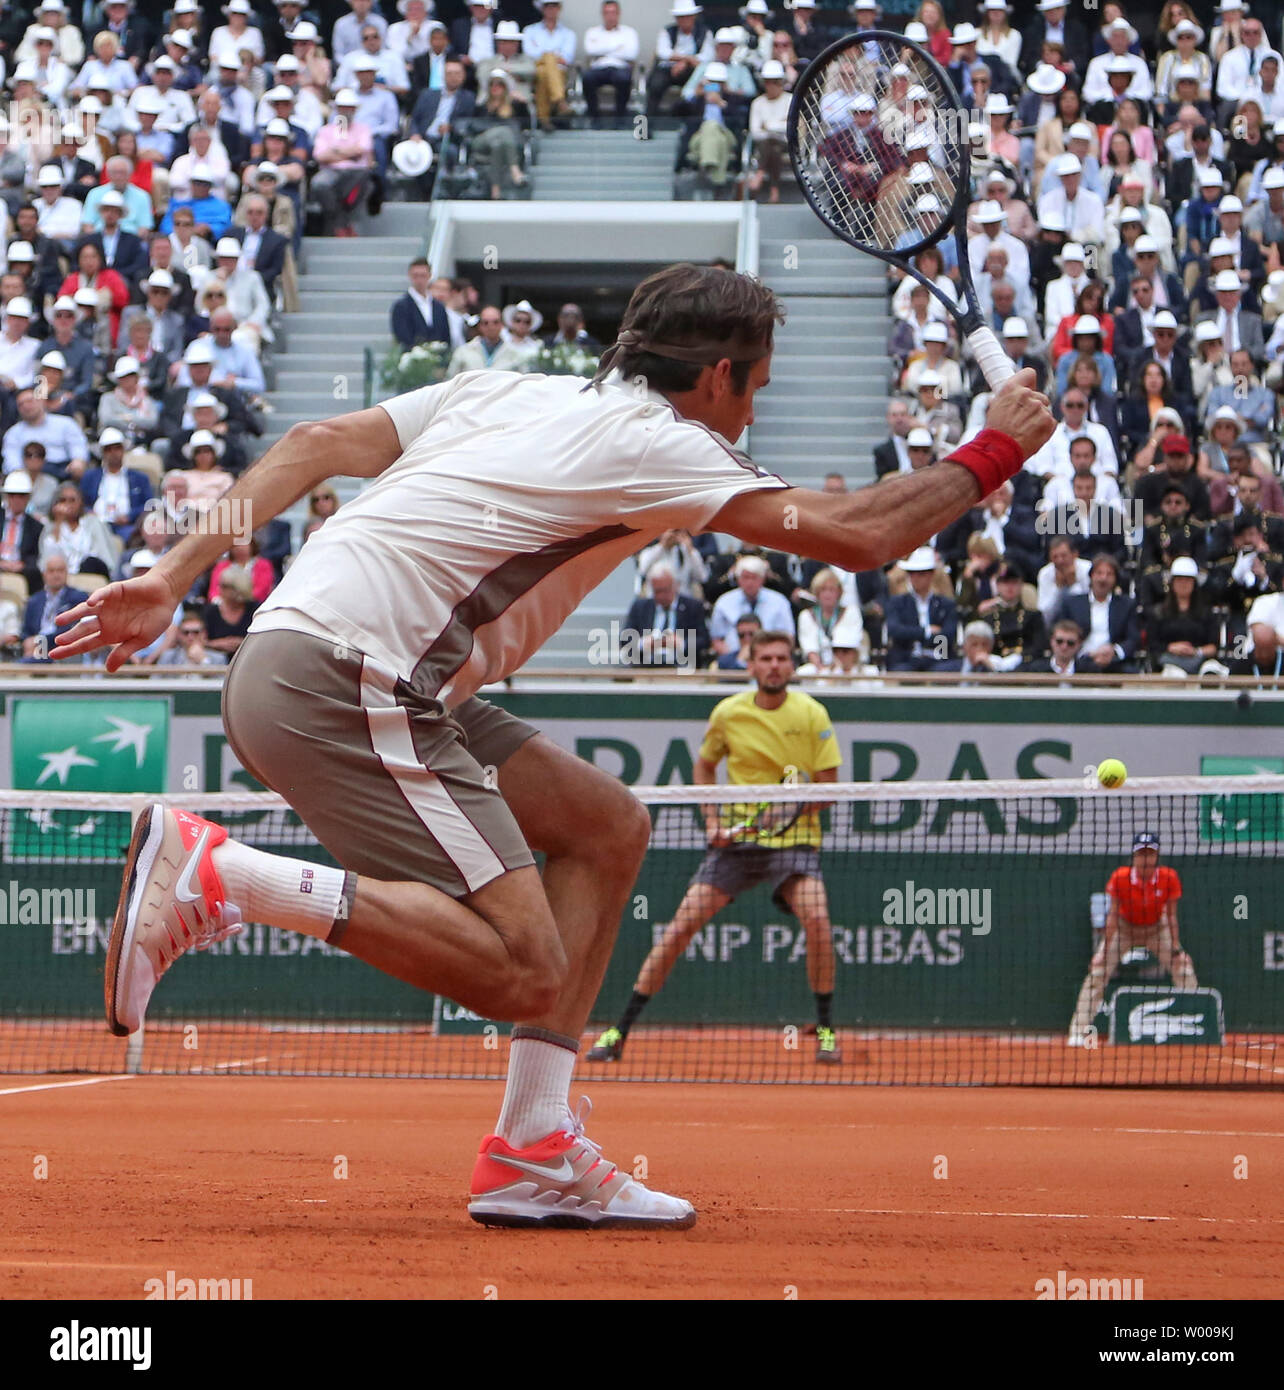 La Suisse de Roger Federer frappe un coup lors de son Open de France men's deuxième tour contre Oscar Otte de l'Allemagne à Roland Garros à Paris le 29 mai 2019. Federer bat Otte 6-4, 6-3, 6-4) pour passer à la troisième ronde. Photo de David Silpa/UPI Banque D'Images